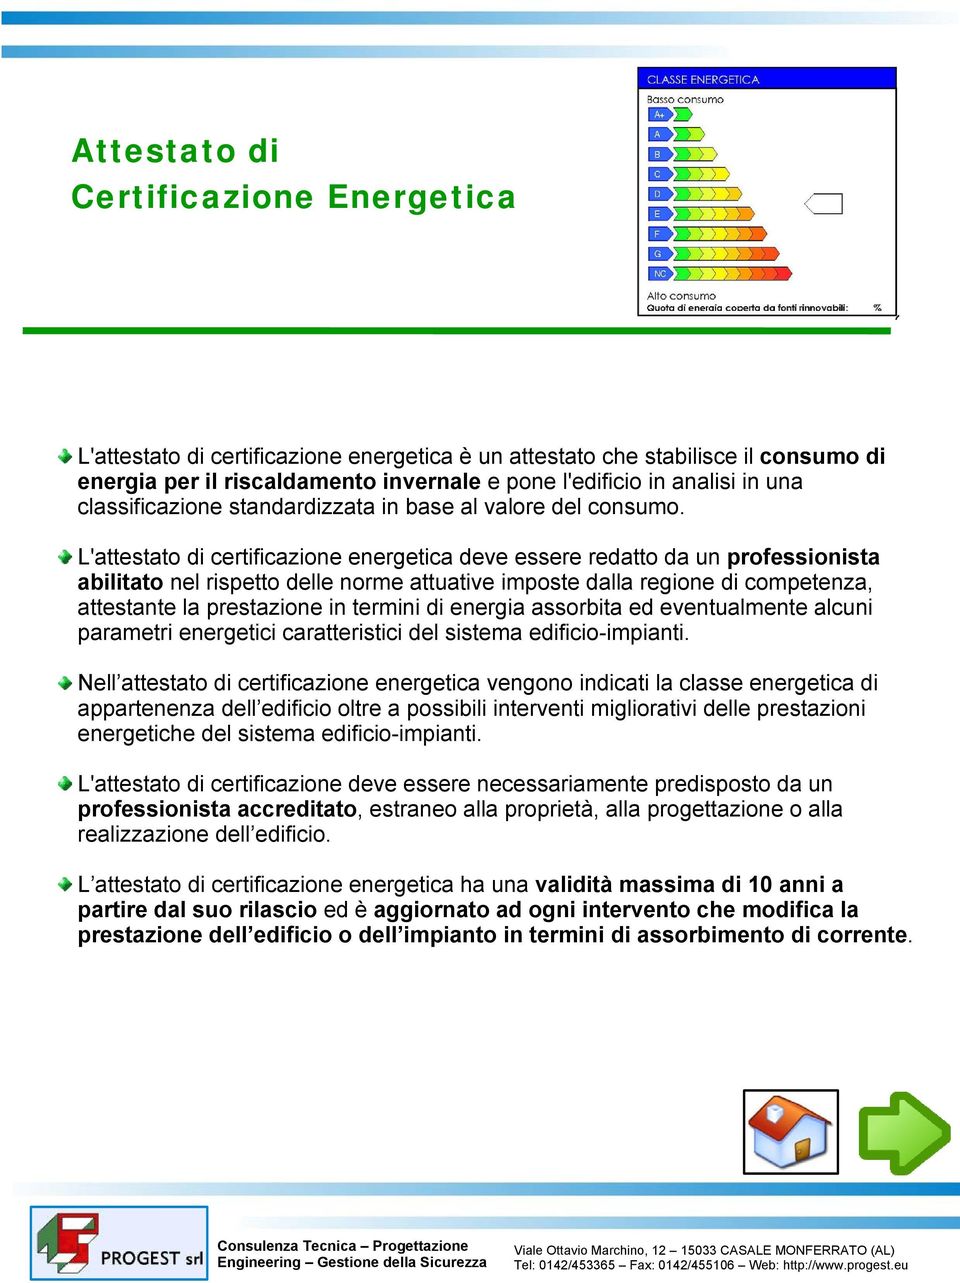 L'attestato di certificazione energetica deve essere redatto da un professionista abilitato nel rispetto delle norme attuative imposte dalla regione di competenza, attestante la prestazione in